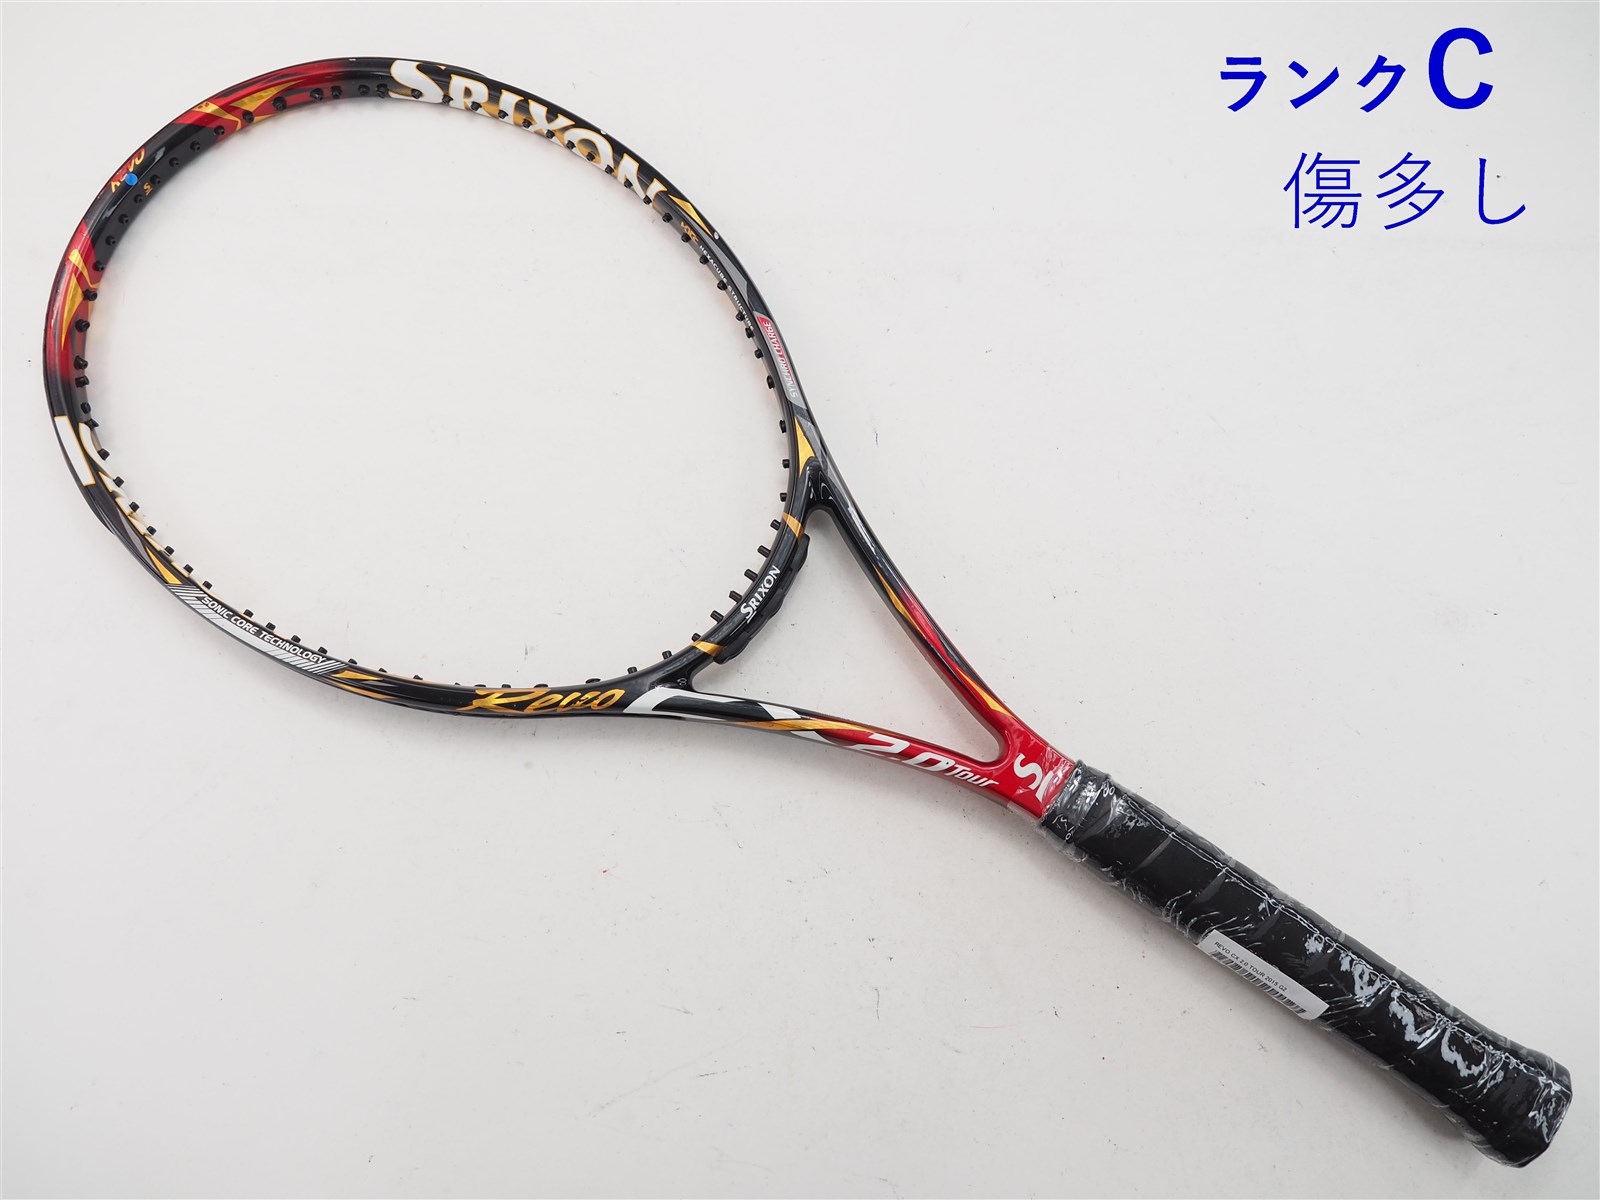 テニスラケット スリクソン レヴォ シーエックス 2.0 ツアー 2015年モデル (G3)SRIXON REVO CX 2.0 TOUR 2015306ｇ張り上げガット状態